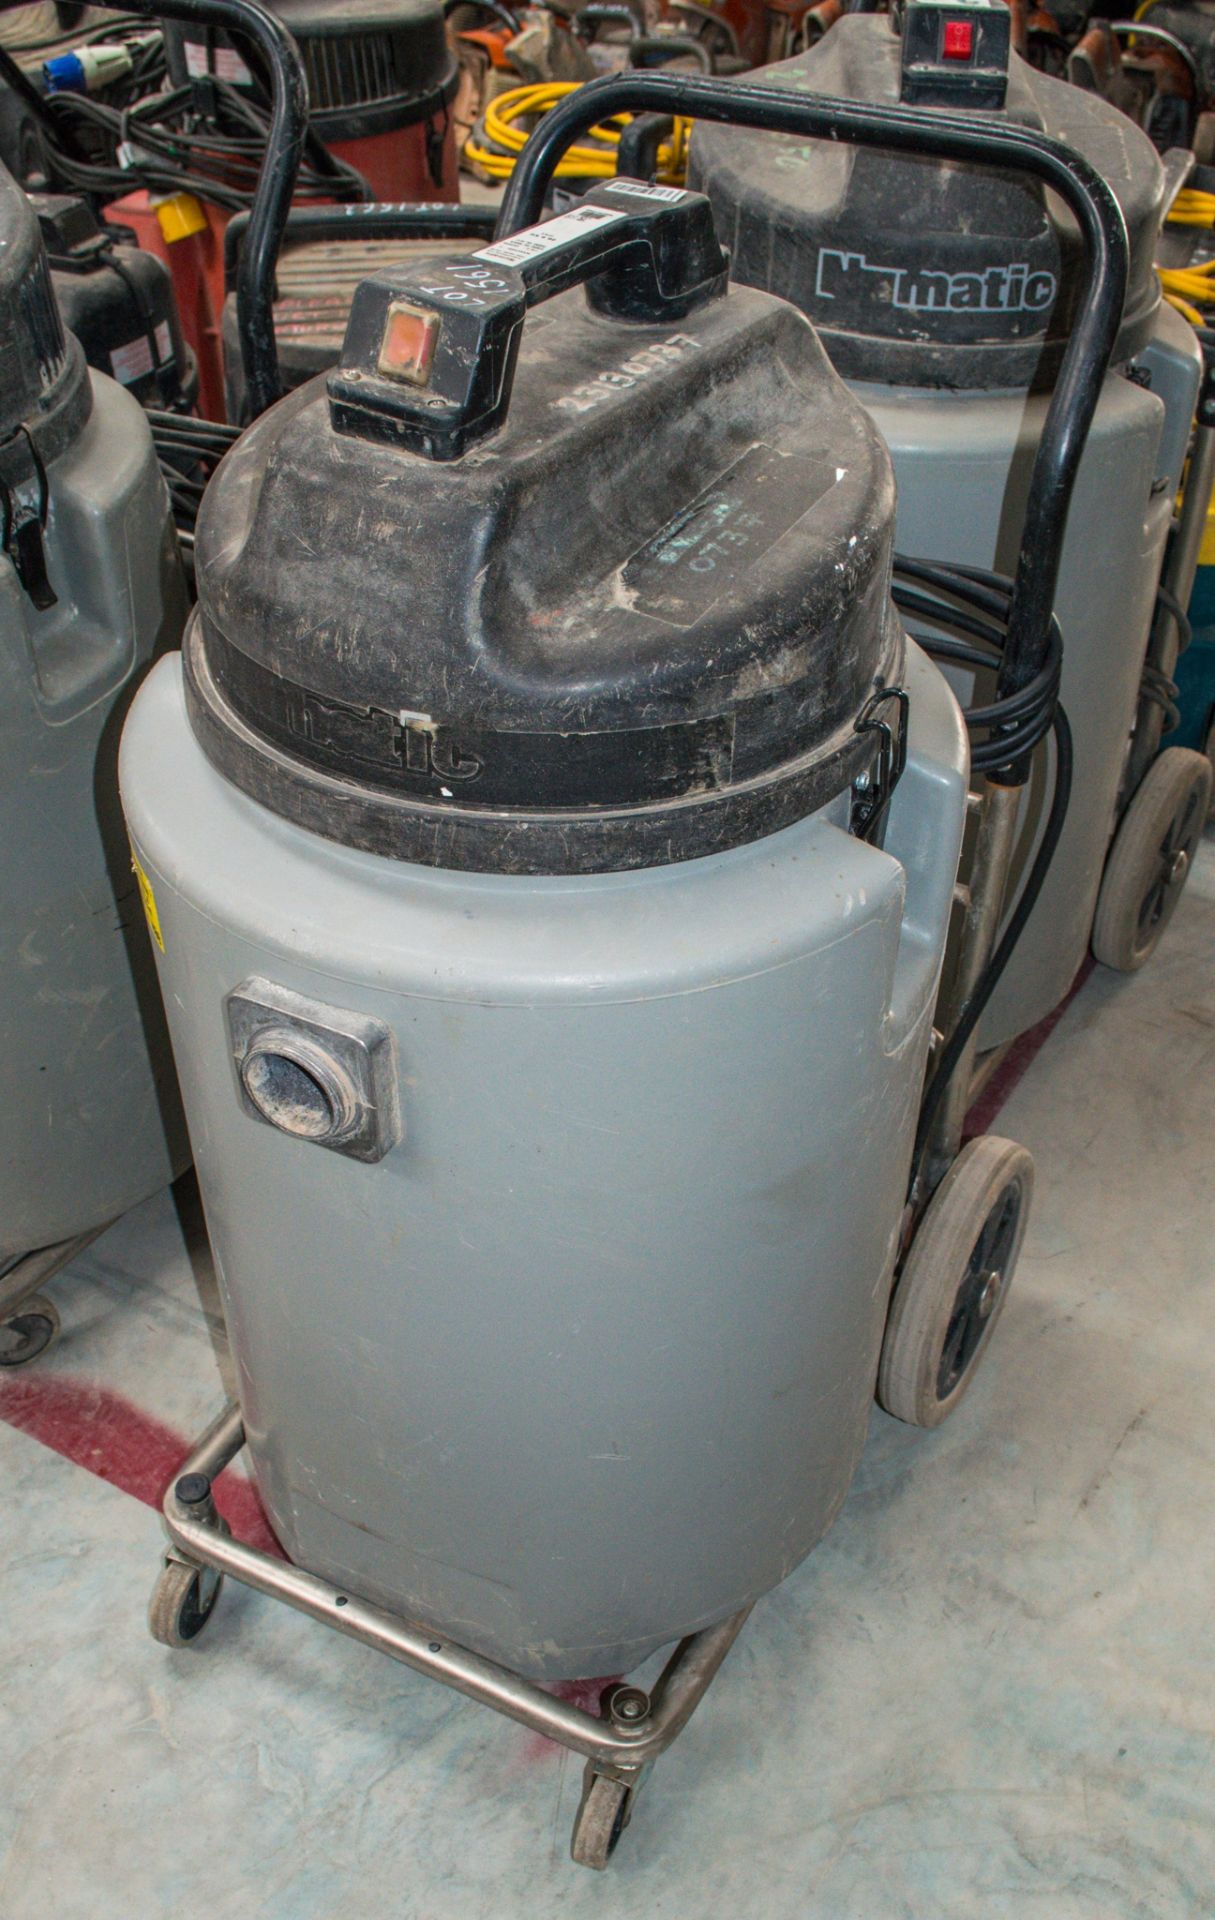 Numatic 110v industrial vacuum cleaner 23130737